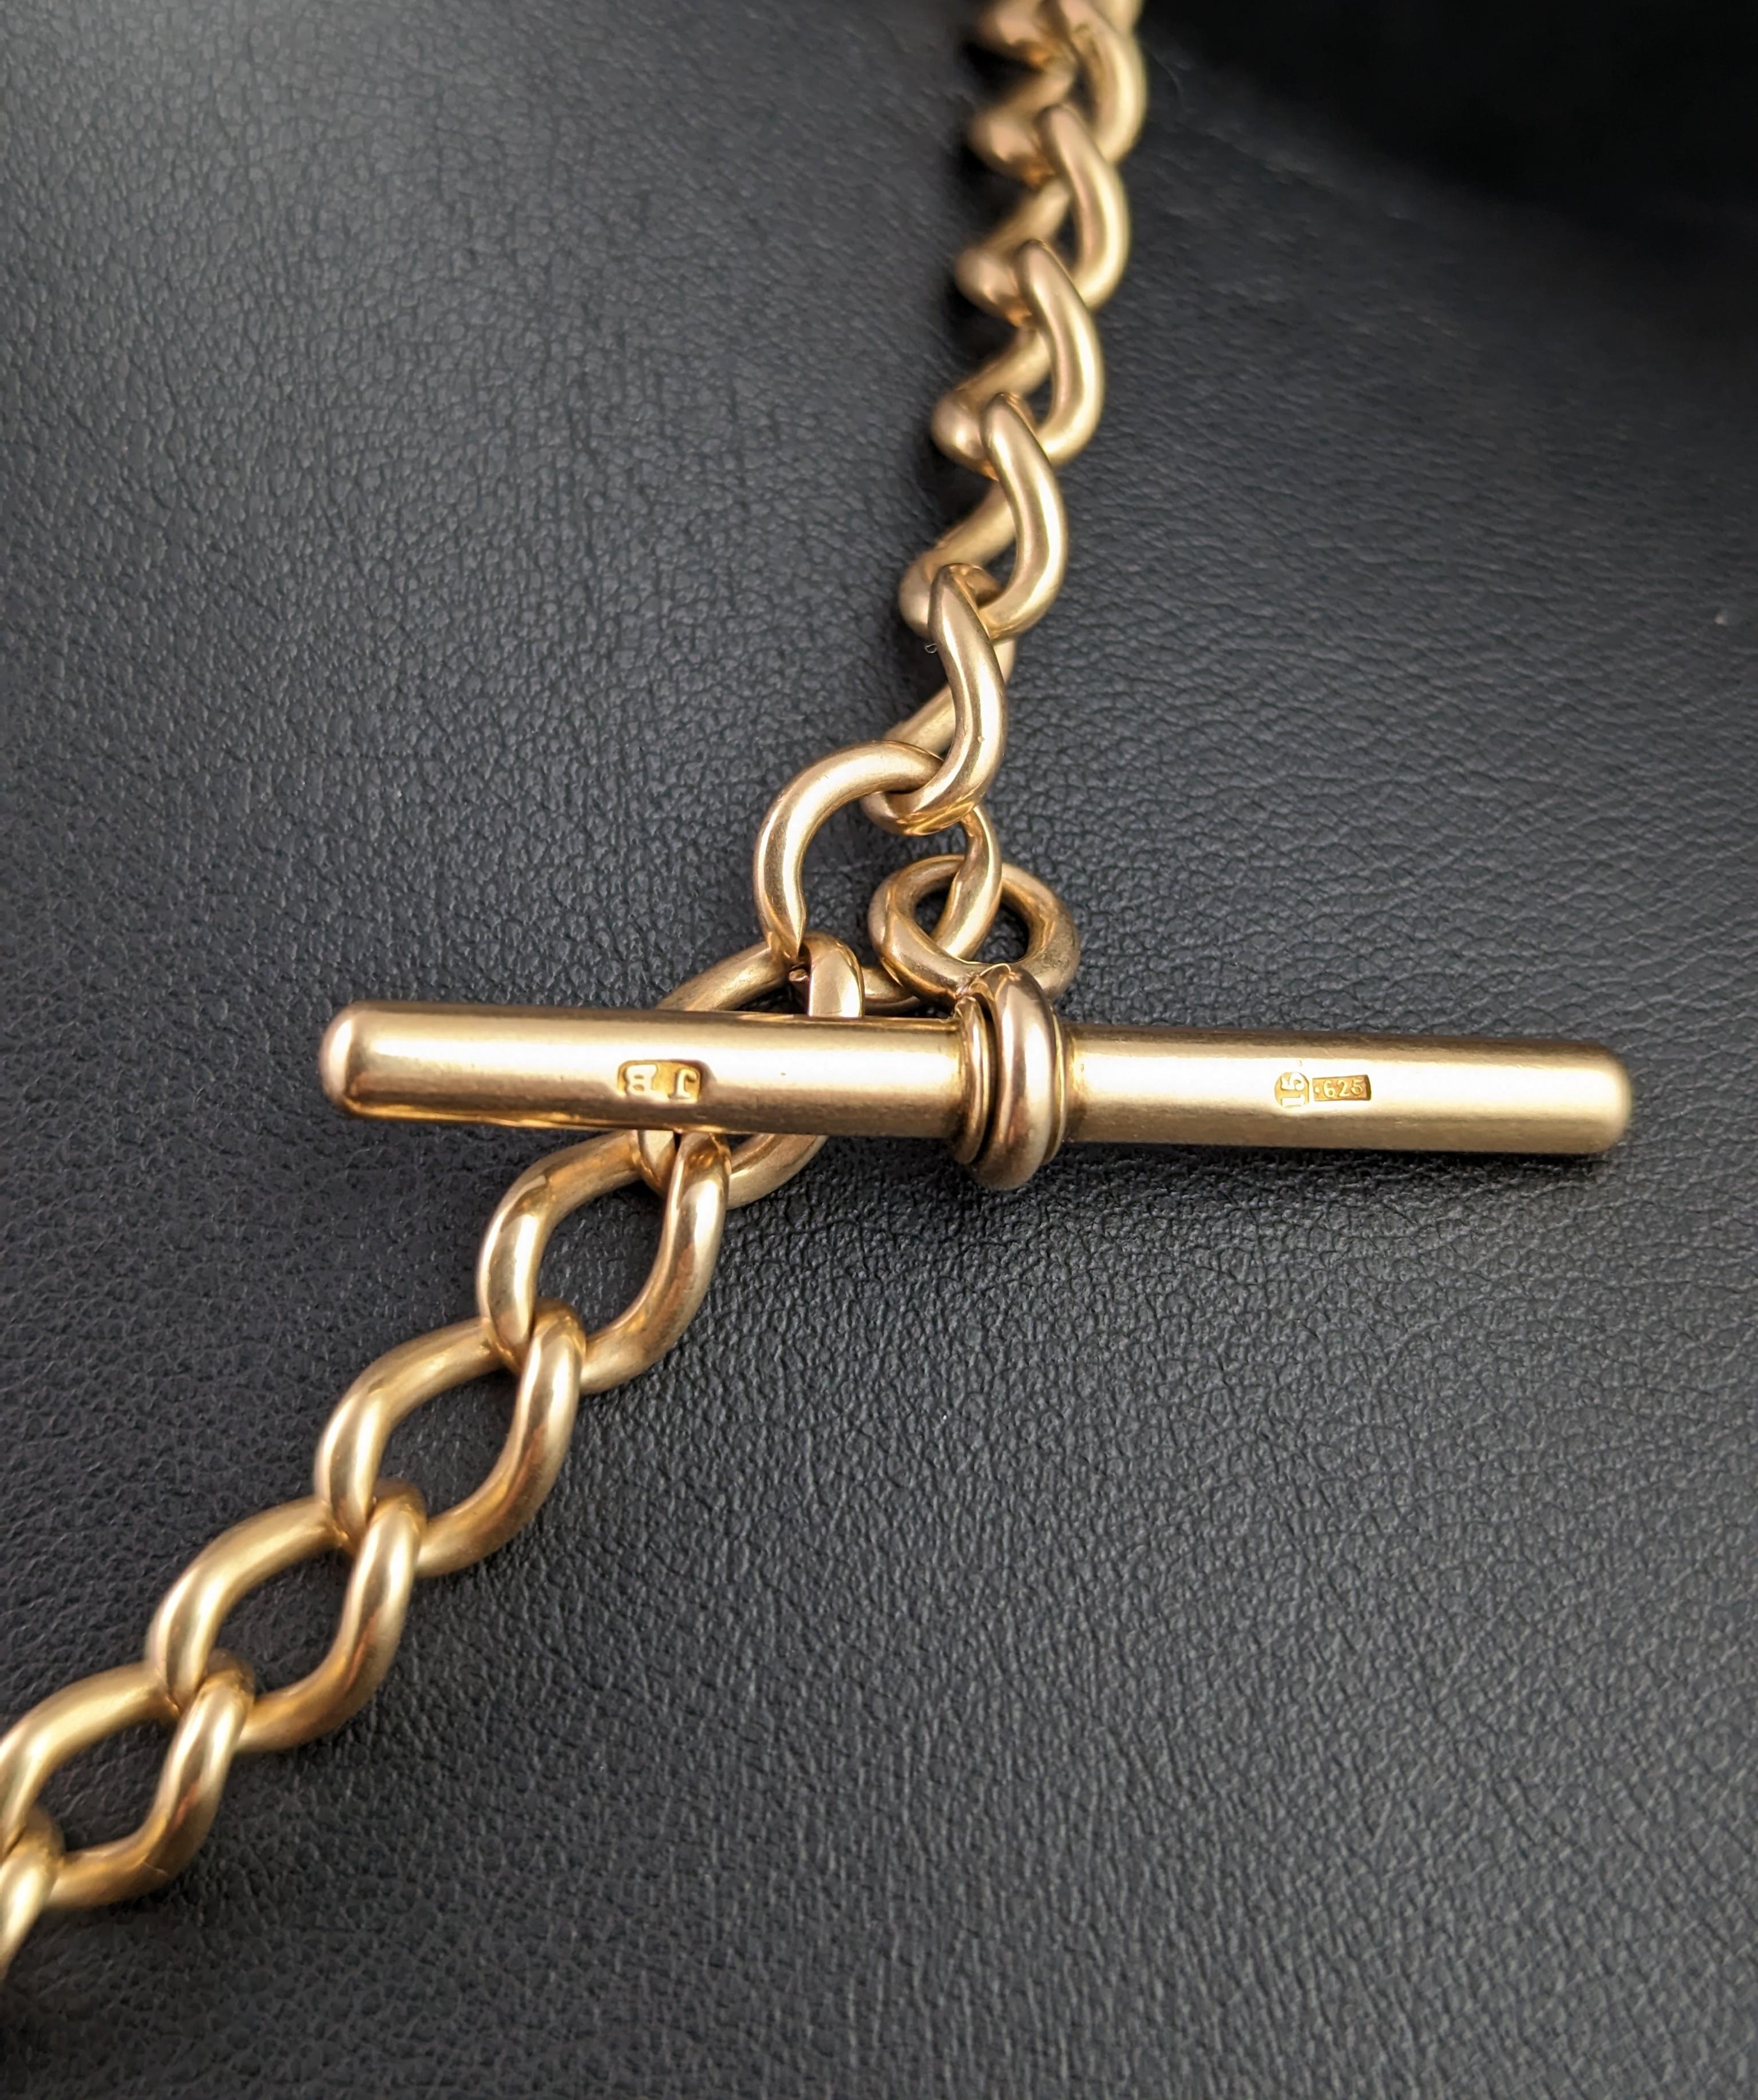 Antique 15k gold Albert chain, Watch chain, heavy  4